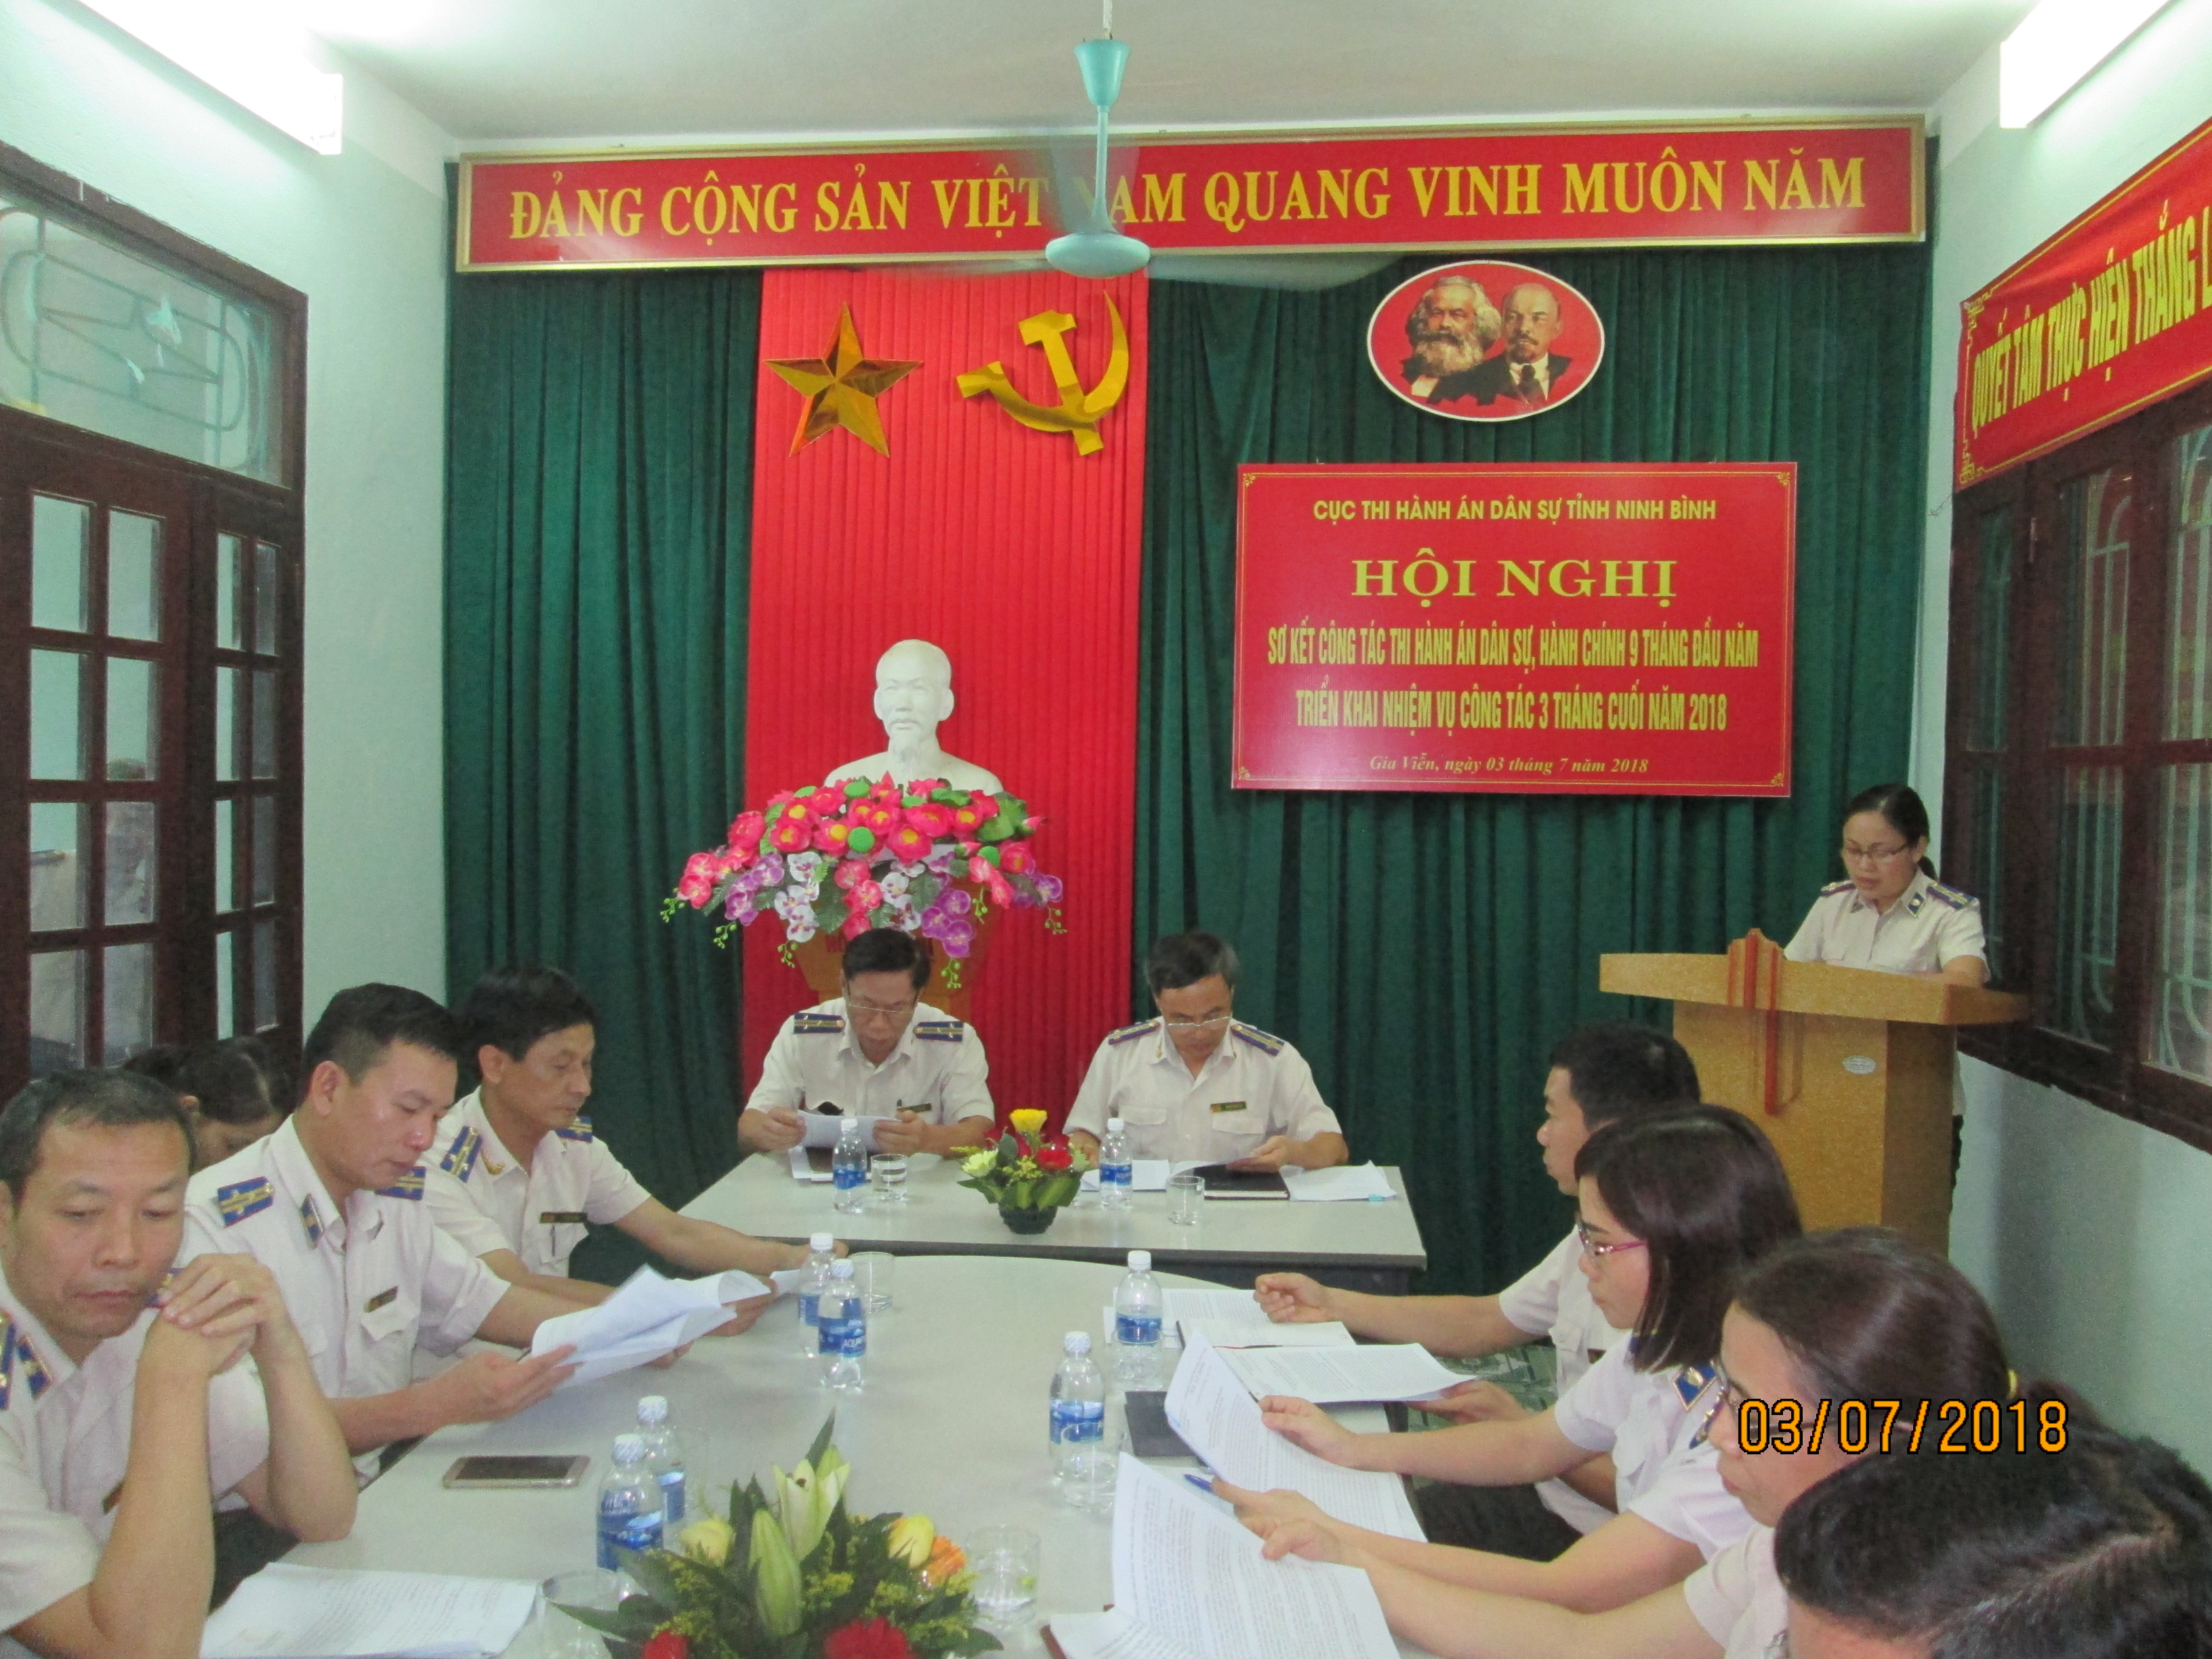 Cục Thi hành án dân sự tỉnh Ninh Bình tổ chức Hội nghị sơ kết công tác thi hành án dân sự, hành chính 9 tháng đầu năm 2018.